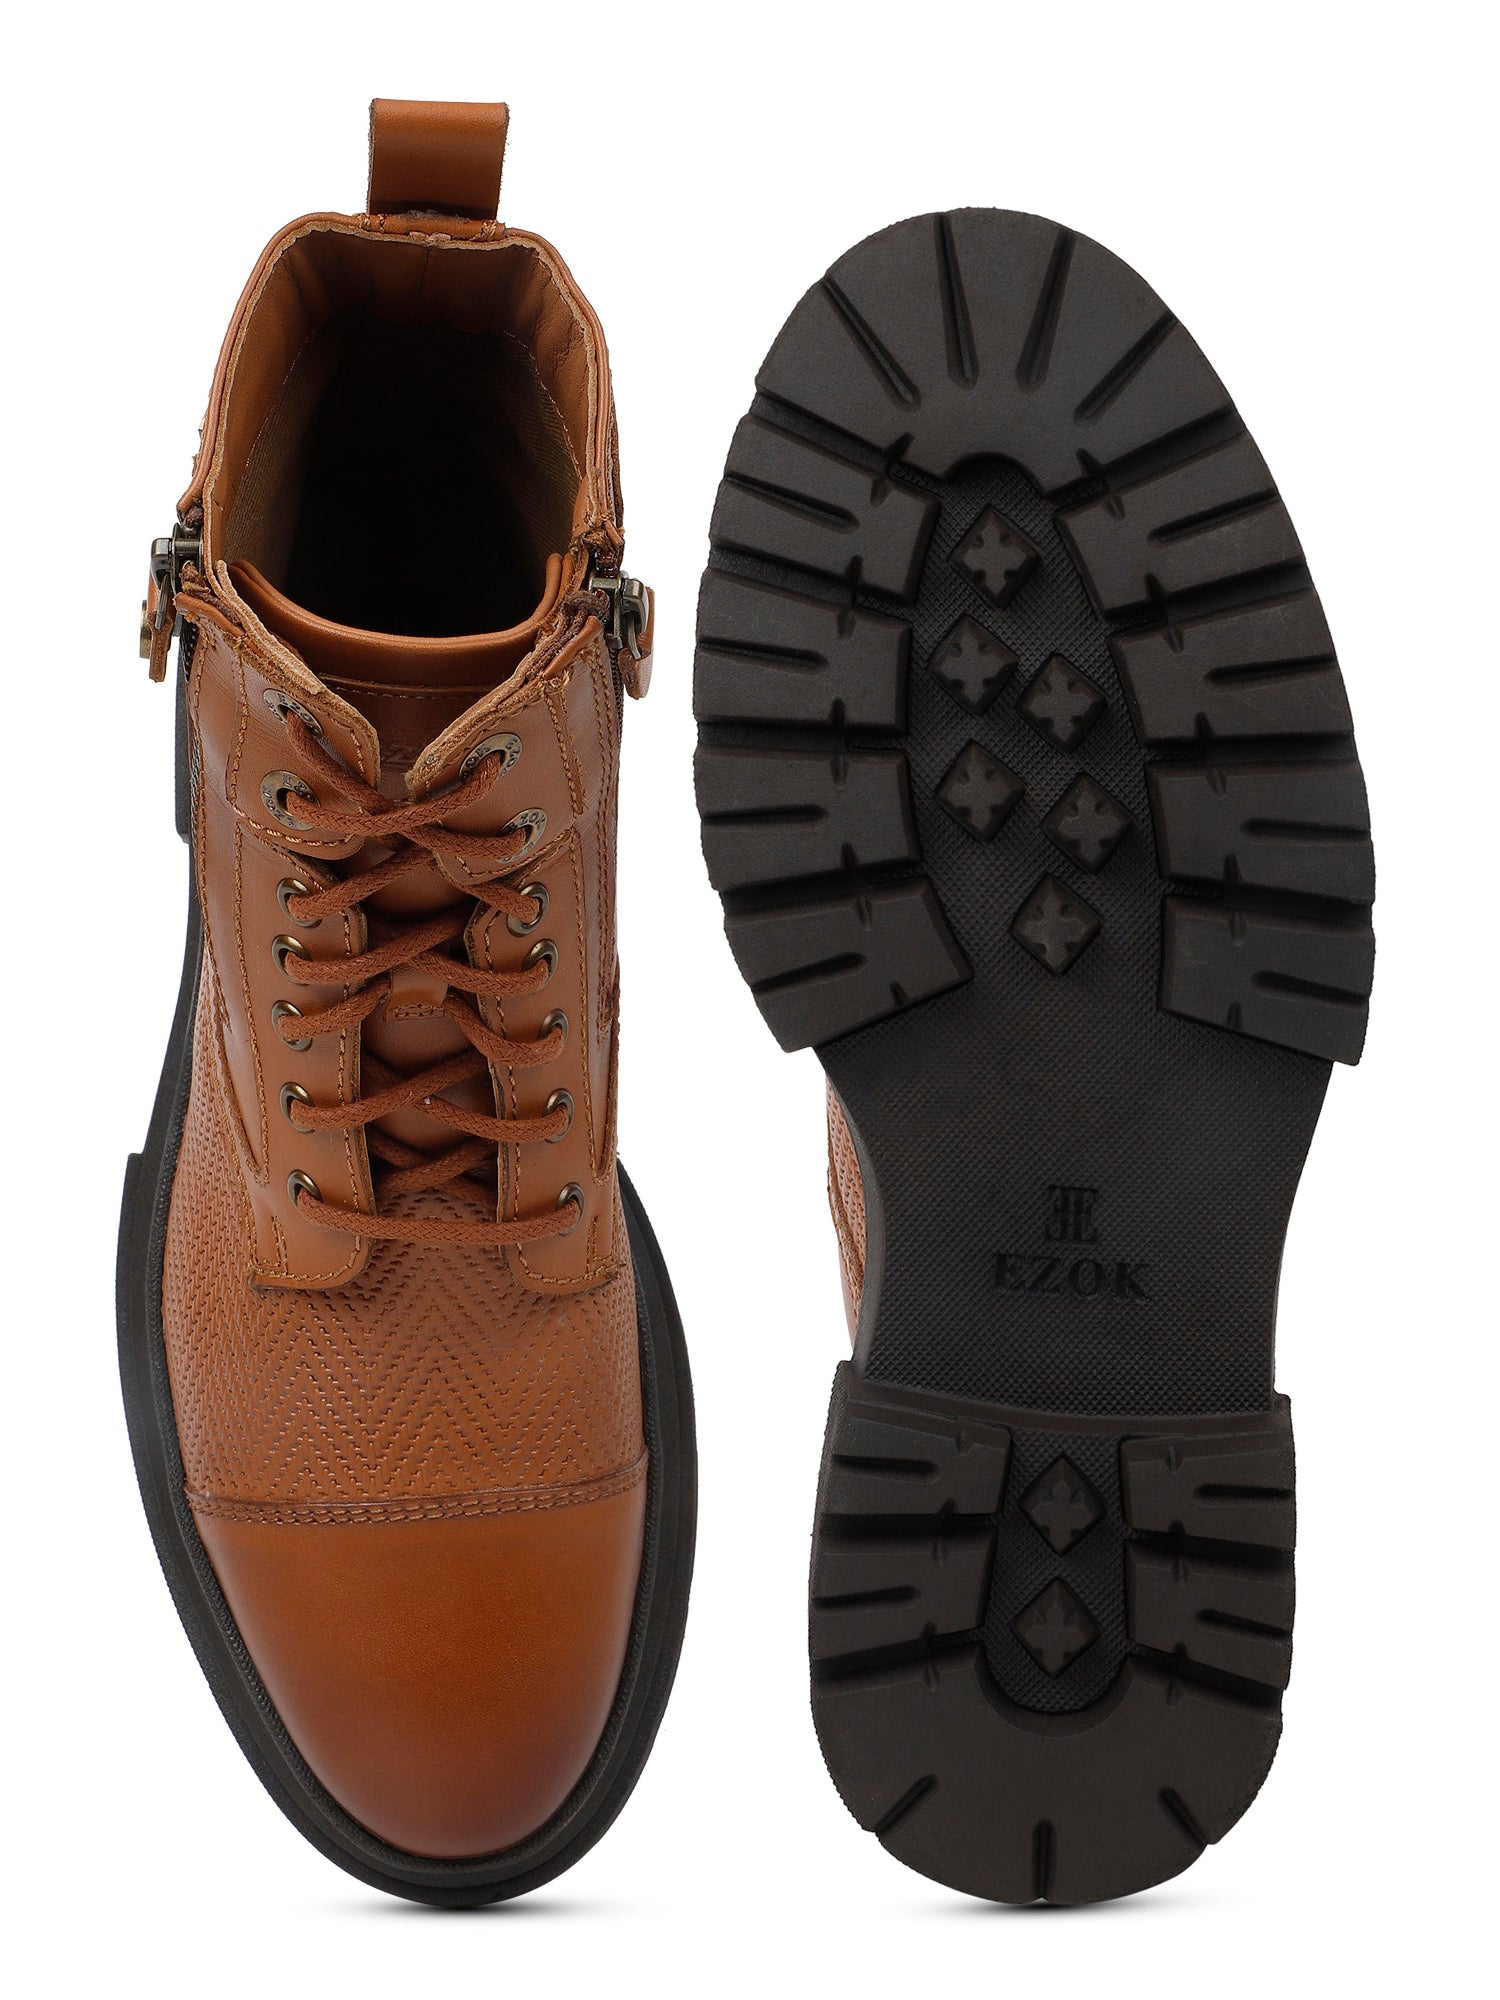 Ezok Tan Casual boot shoes for men (2501)